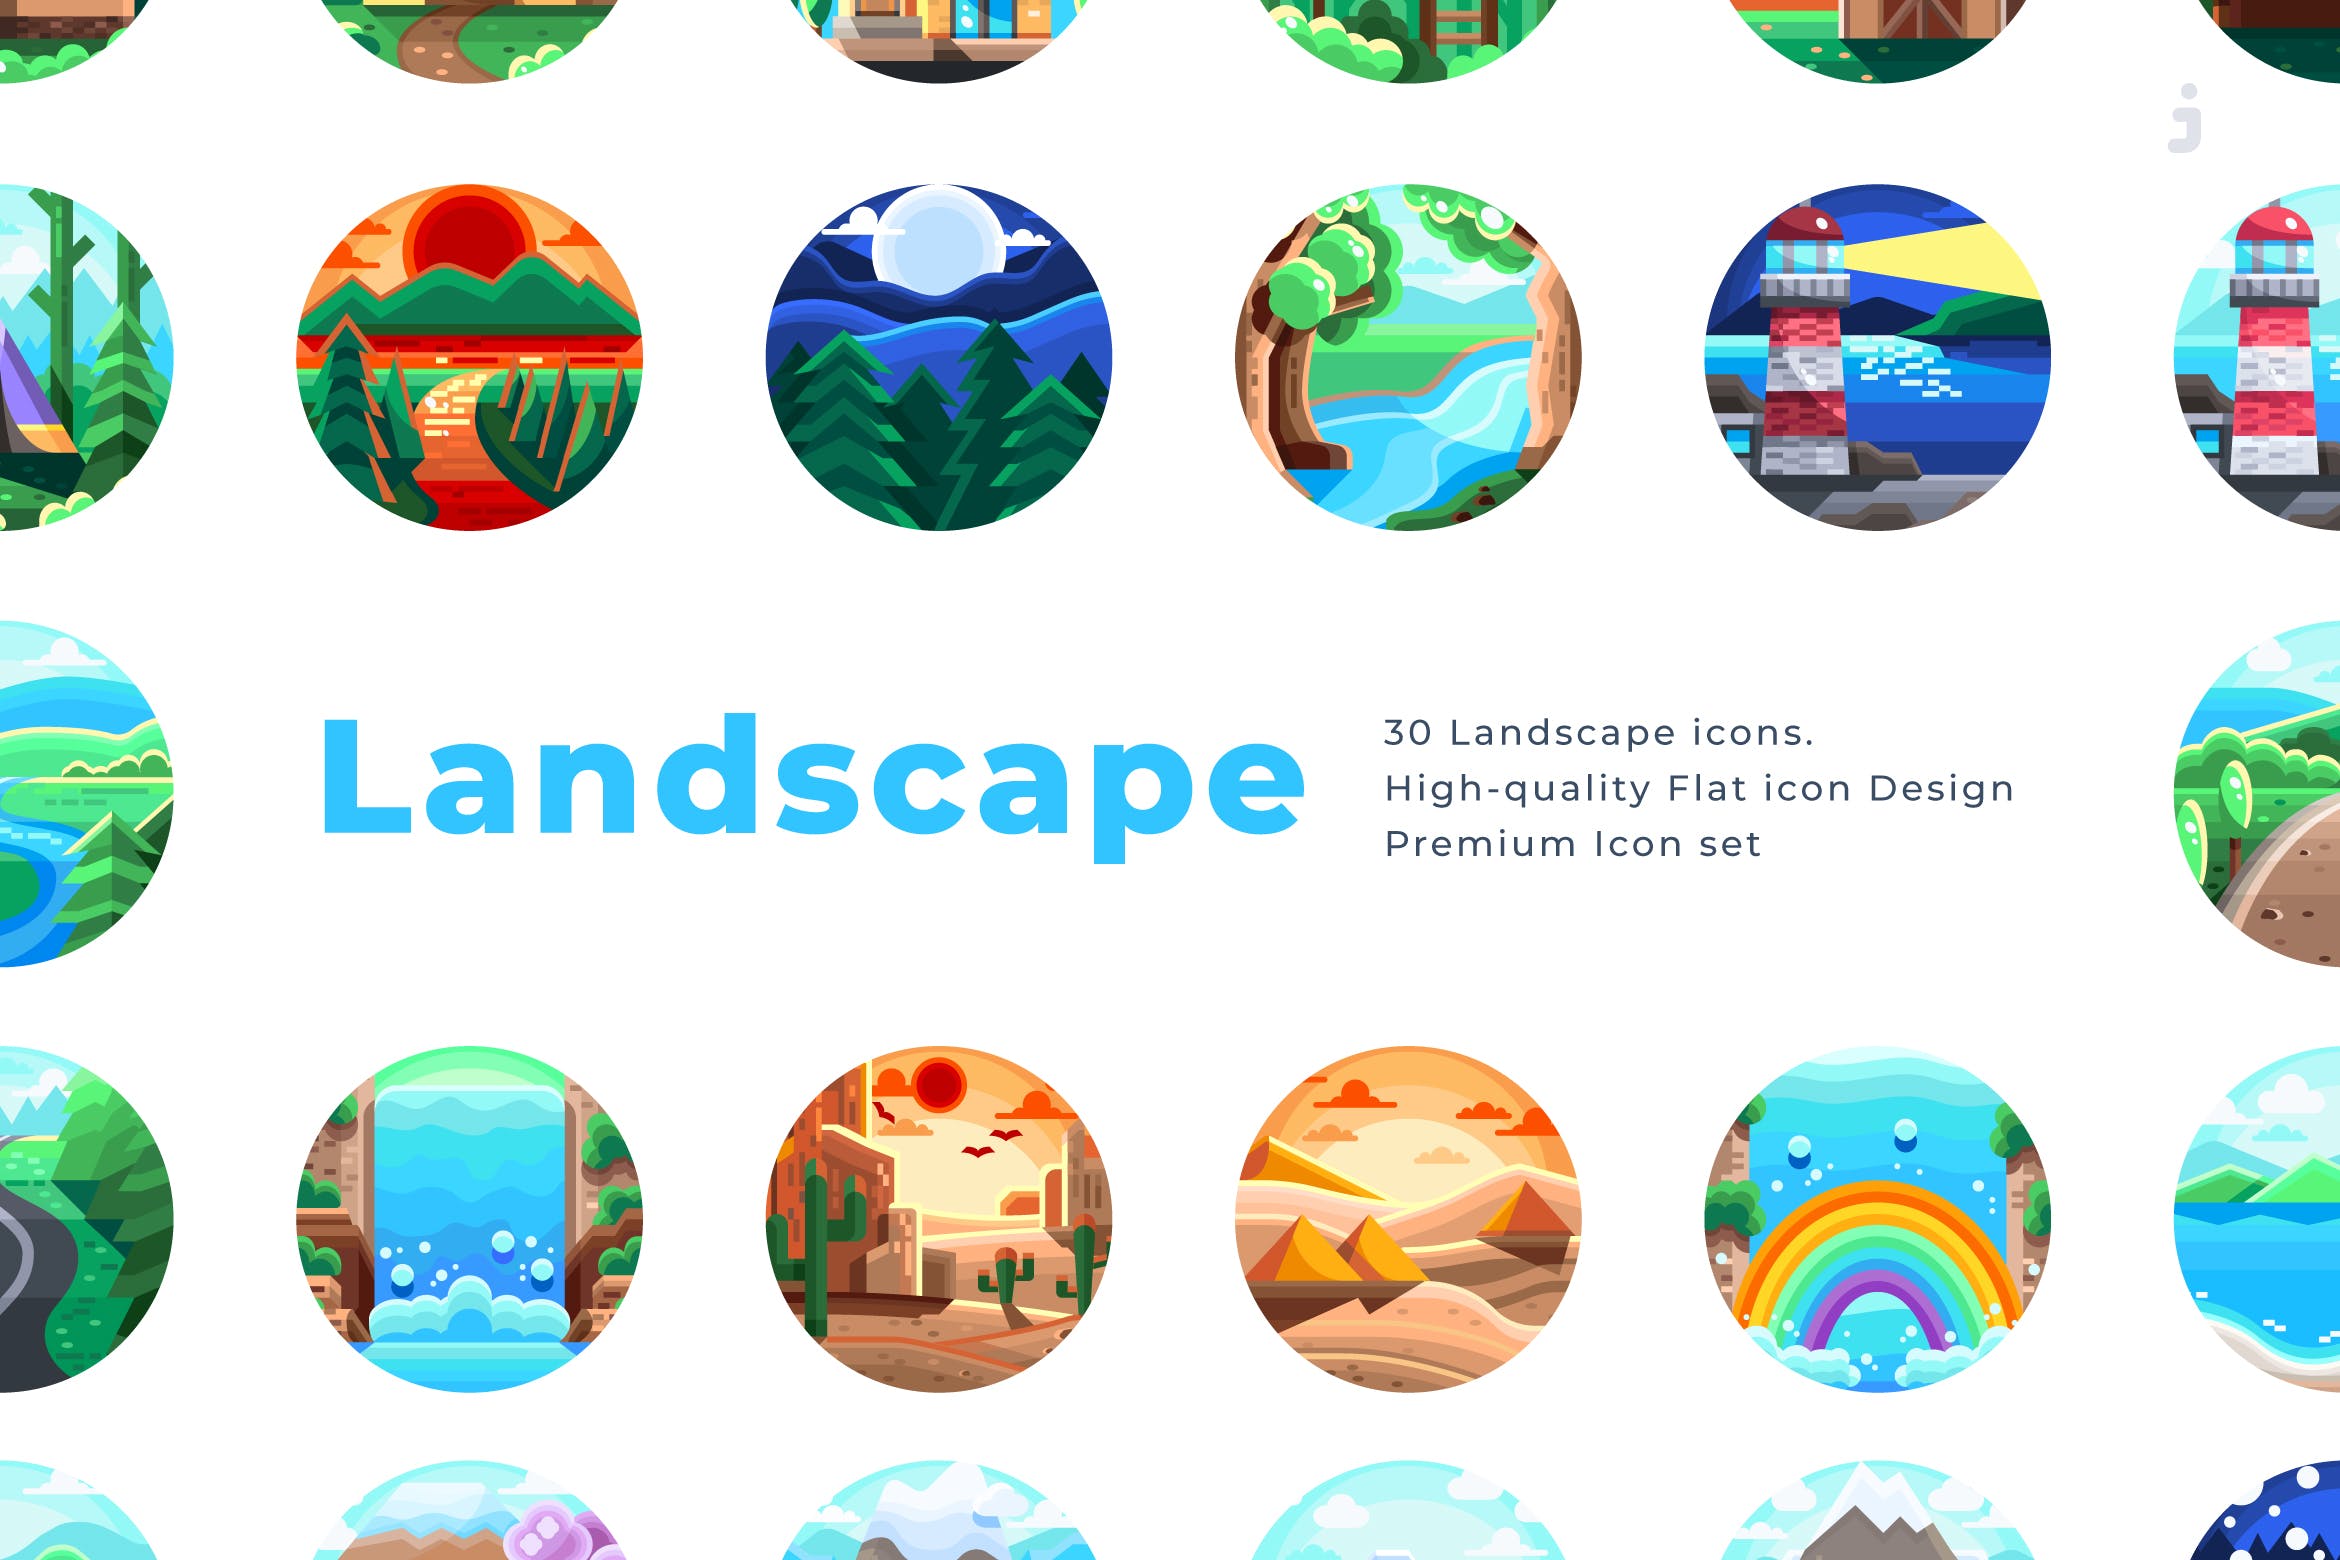  30个景观创意扁平化图标源文件下载30 Landscape Icons Flat